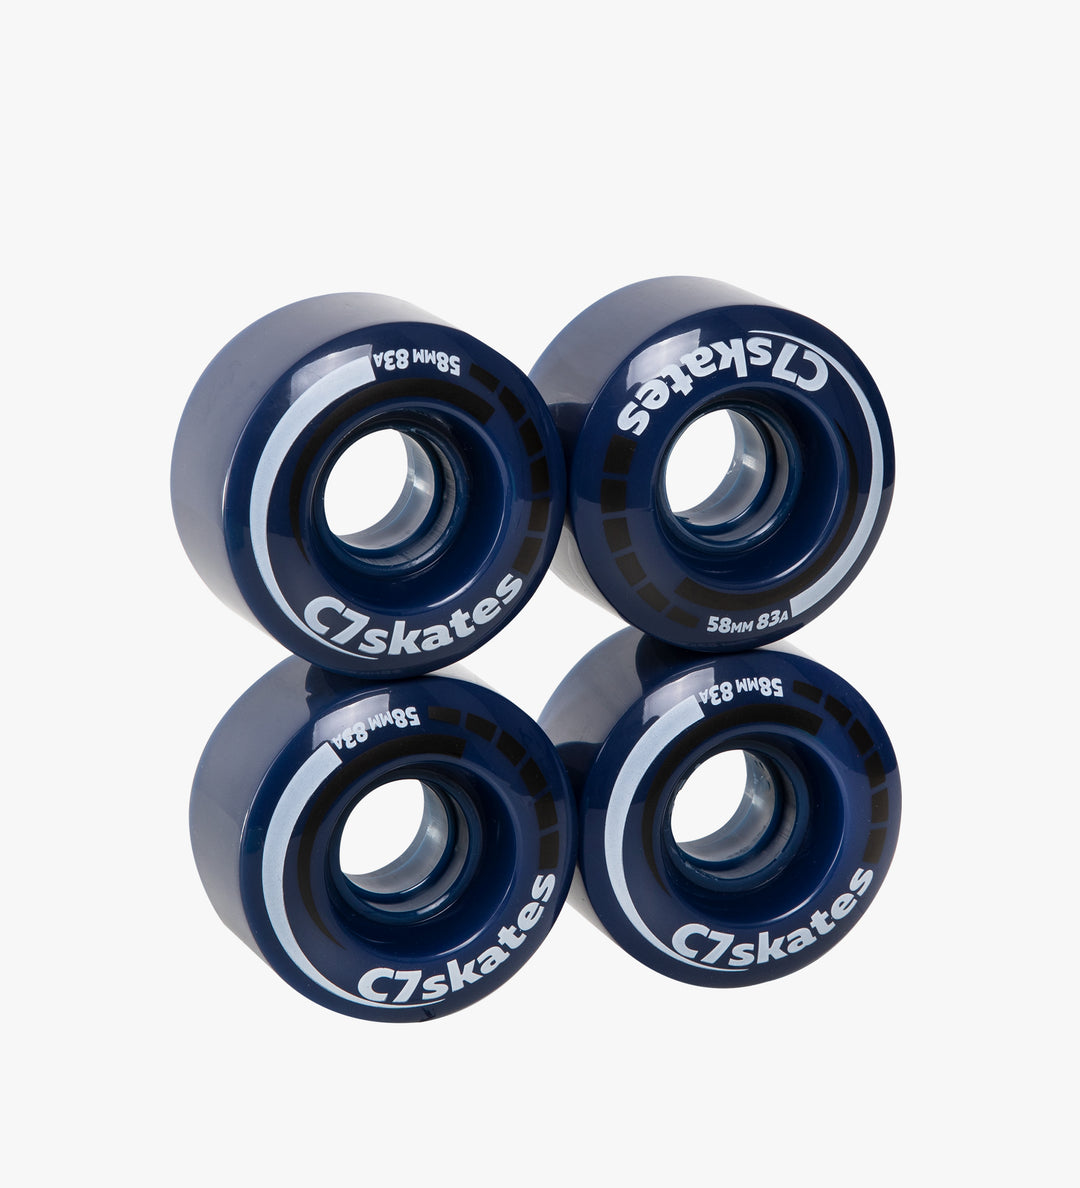 Fundación Tareas del hogar esclavo Blossom Dark Blue Roller Skate Wheels (Set of 4) – C7skates